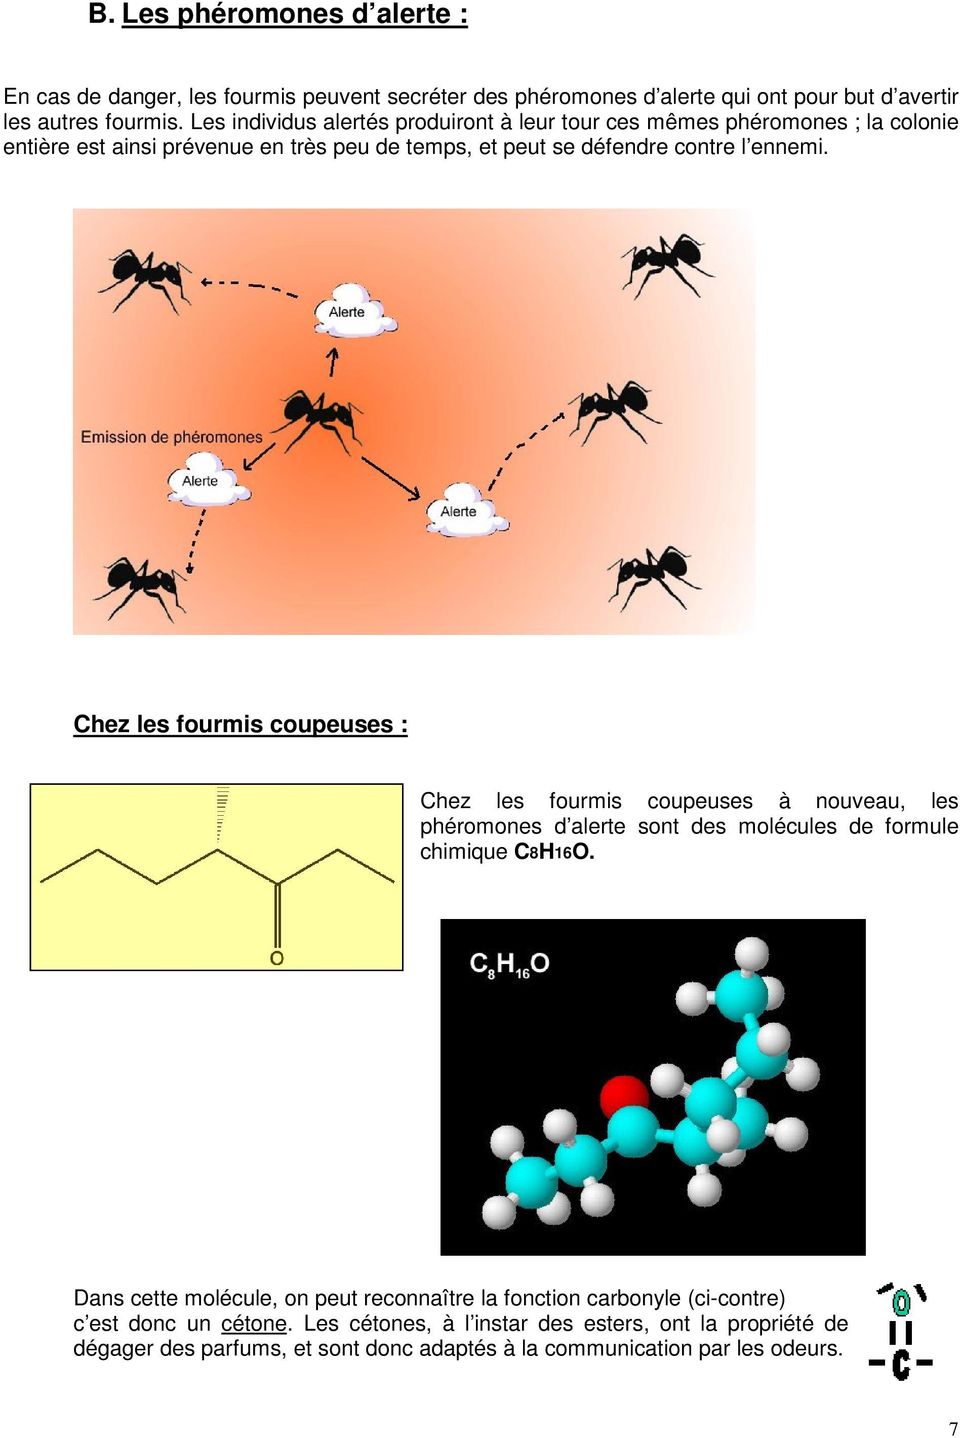 Chez les fourmis coupeuses : Chez les fourmis coupeuses à nouveau, les phéromones d alerte sont des molécules de formule chimique C8H16O.